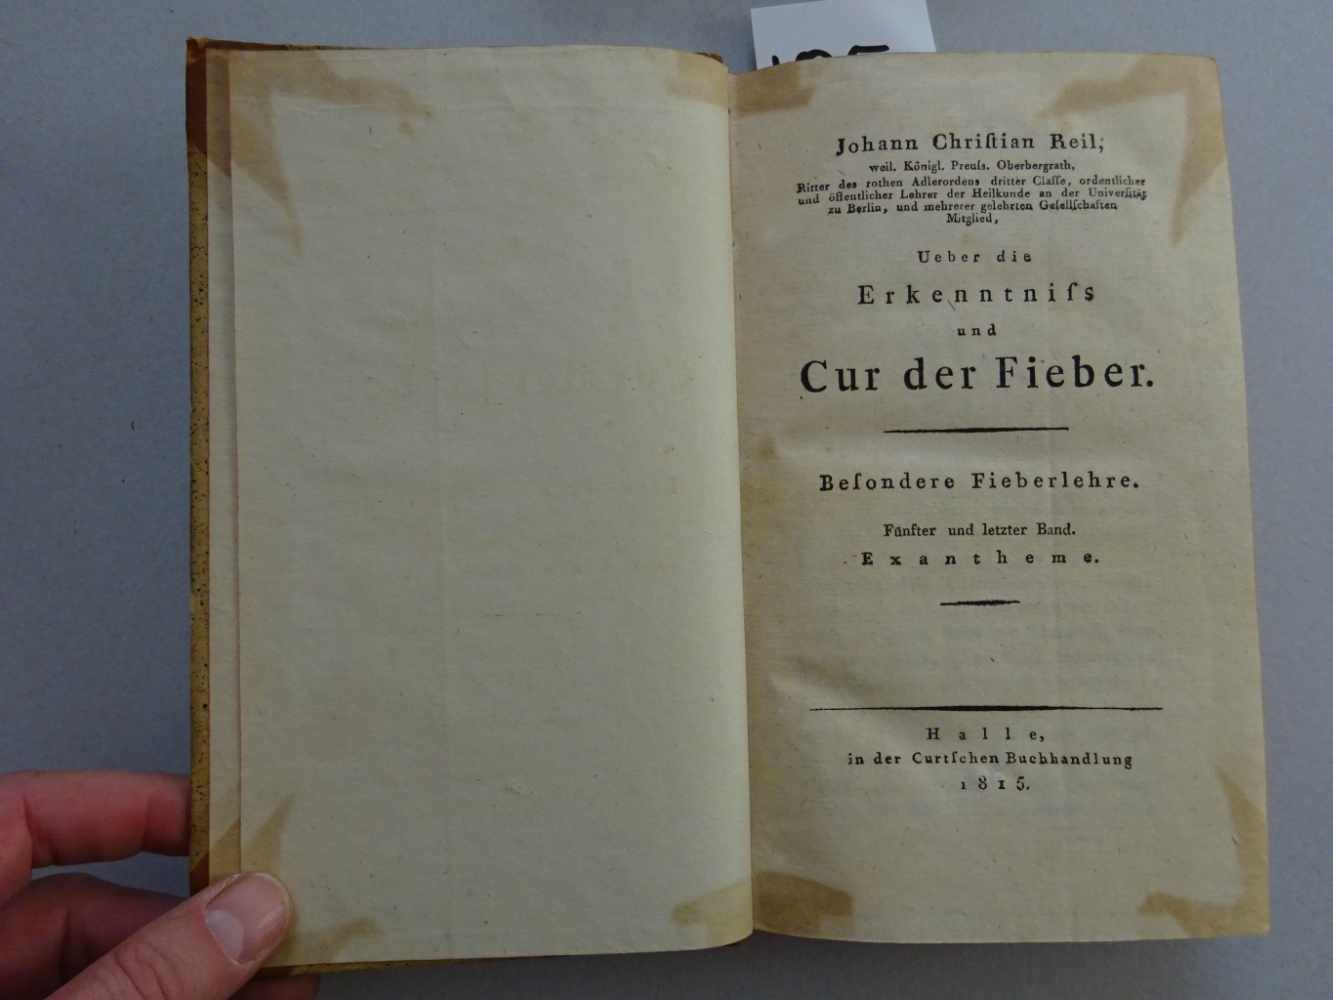 Reil, J.C.Ueber die Erkenntnis und Kur der Fieber. Mischauflage. 5 Bde. Halle, Curt, 1815 bzw. - Image 4 of 4